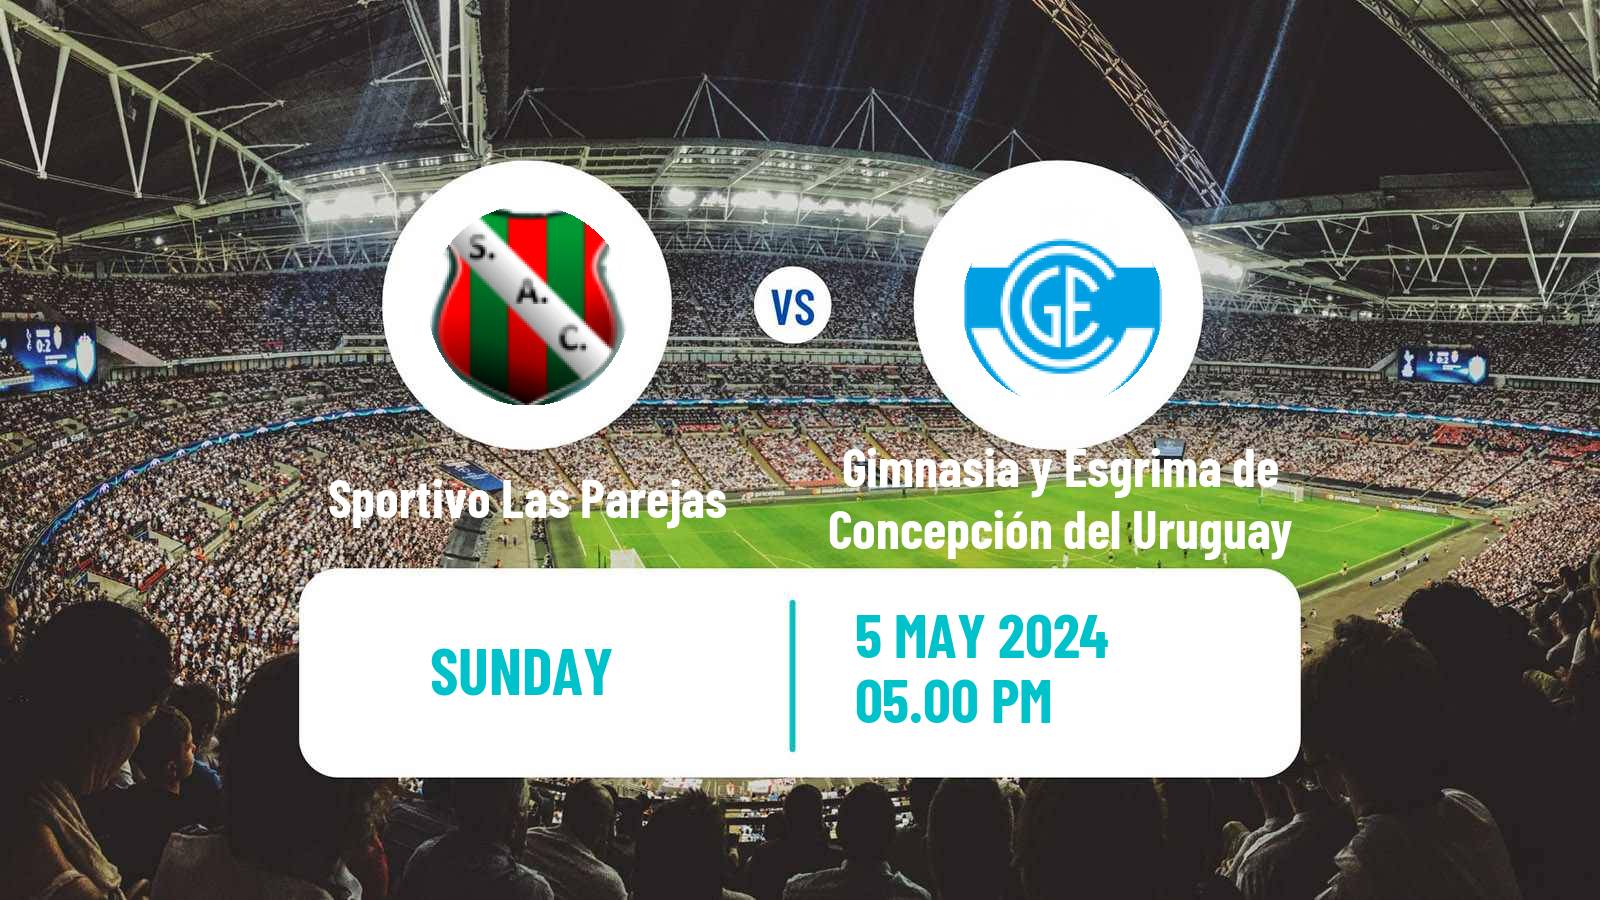 Soccer Argentinian Torneo Federal Sportivo Las Parejas - Gimnasia y Esgrima de Concepción del Uruguay